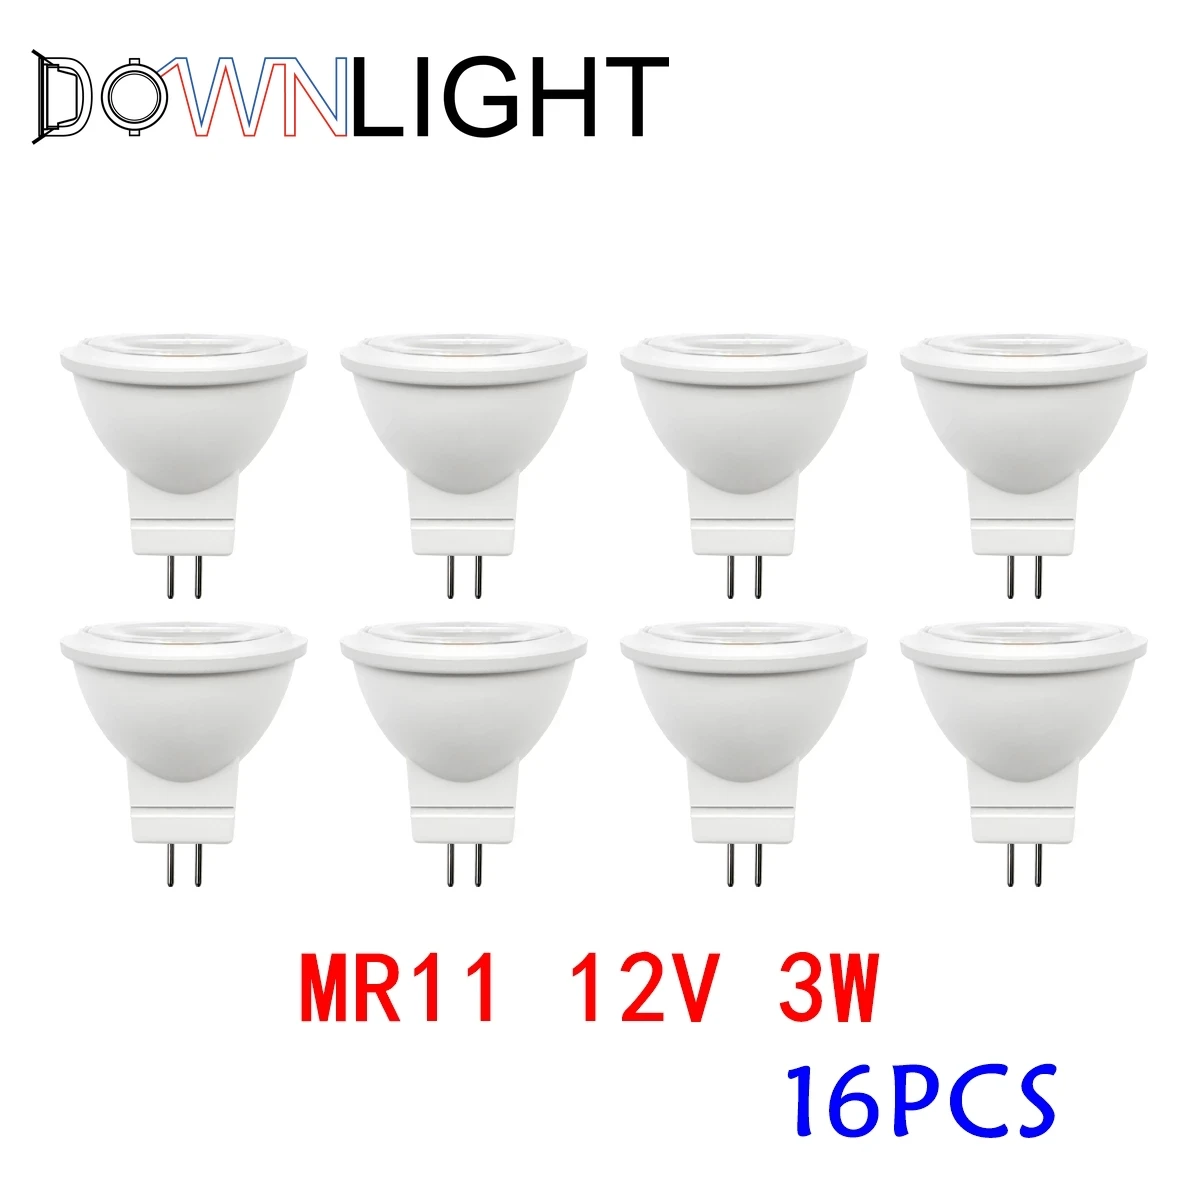 16PCS Energy Saving Led Bulb Mr11 GU4 12V 3W Cob Spotlight 3000k 4000k 6000k Warm Light For Home Decoration Replace Halogen Lamp